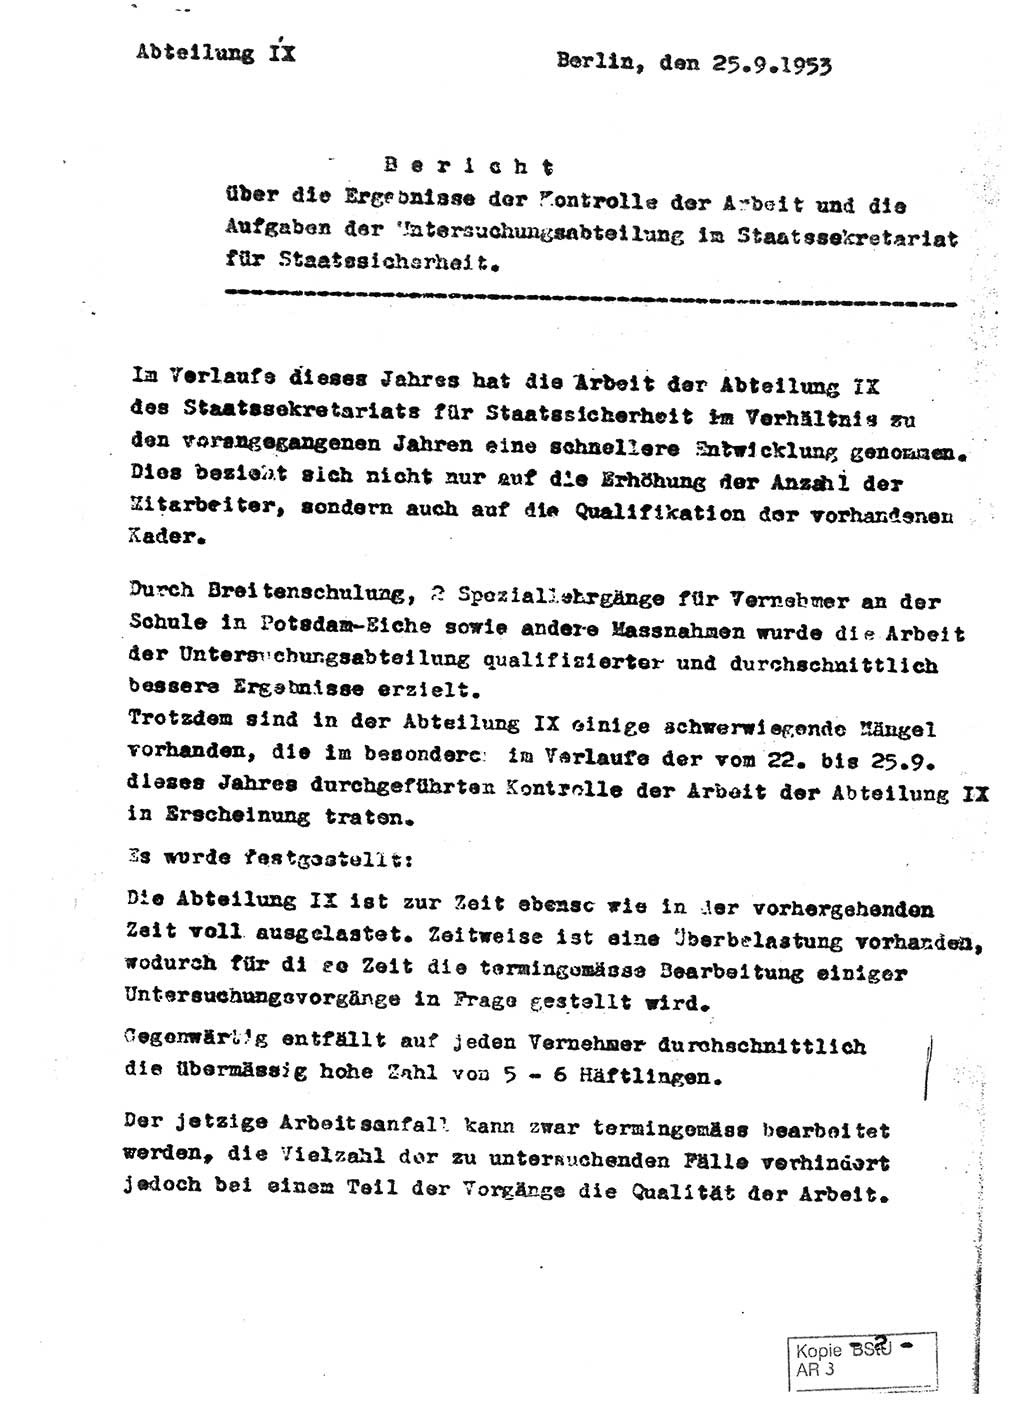 Staatssekretariat für Staatssicherheit (SfS) [Deutsche Demokratische Republik (DDR)], Abteilung (Abt.) Ⅸ, Berlin 1953, Seite 1 (Ber. SfS DDR Abt. Ⅸ /53 1953, S. 1)